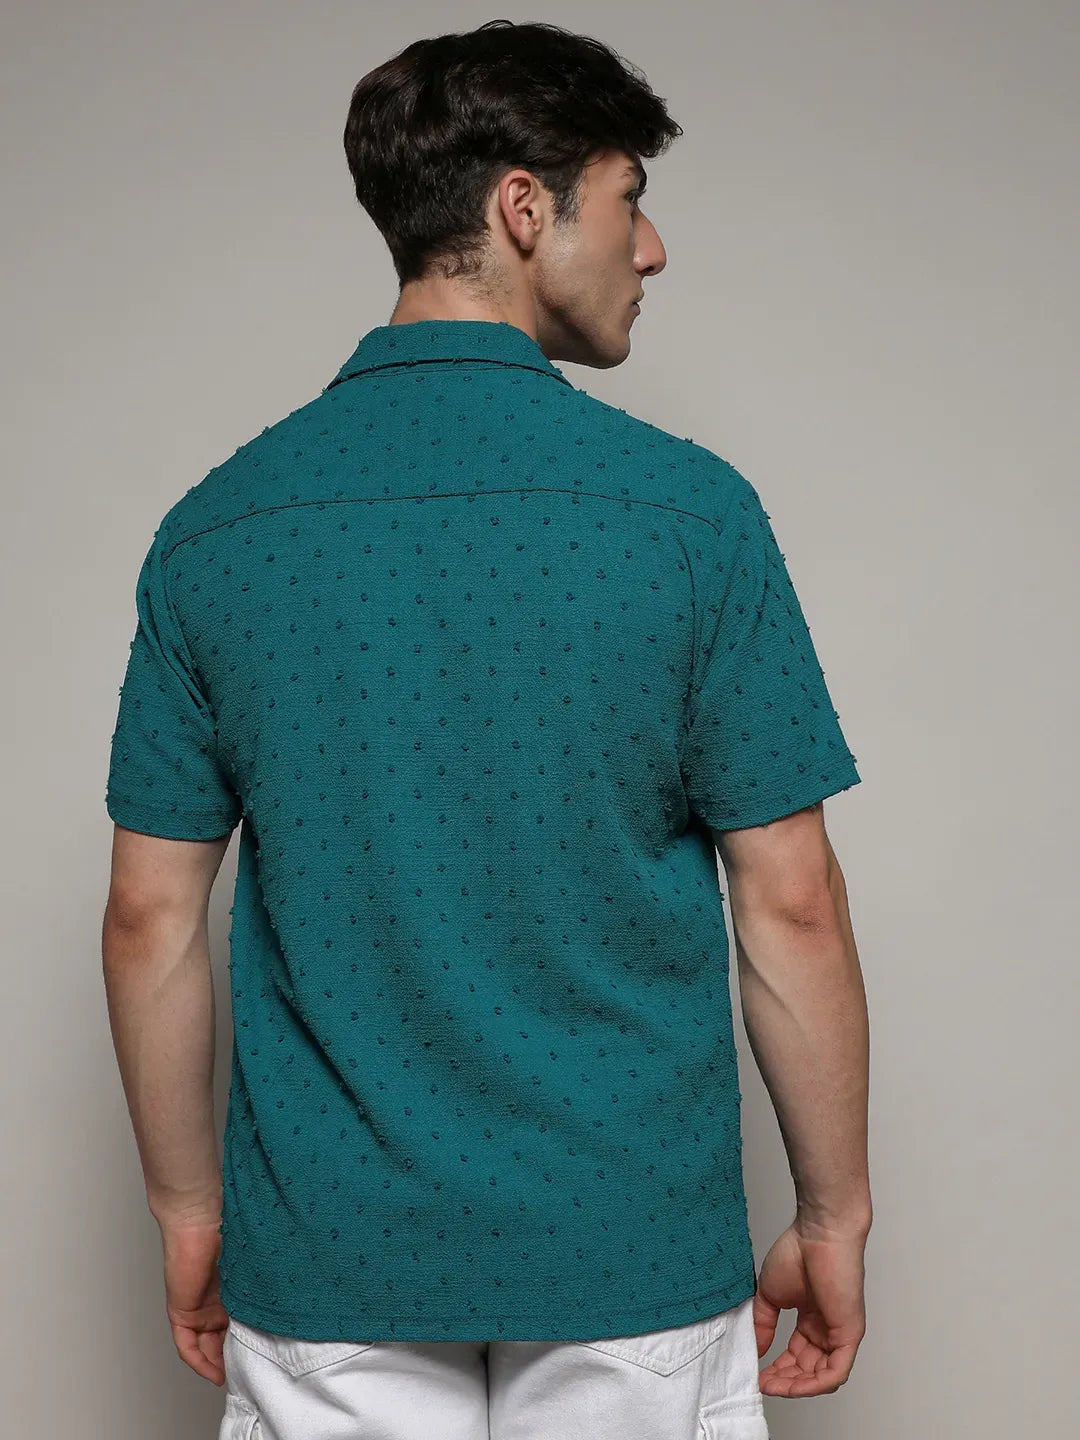 Self-Design Pom-Pom Shirt